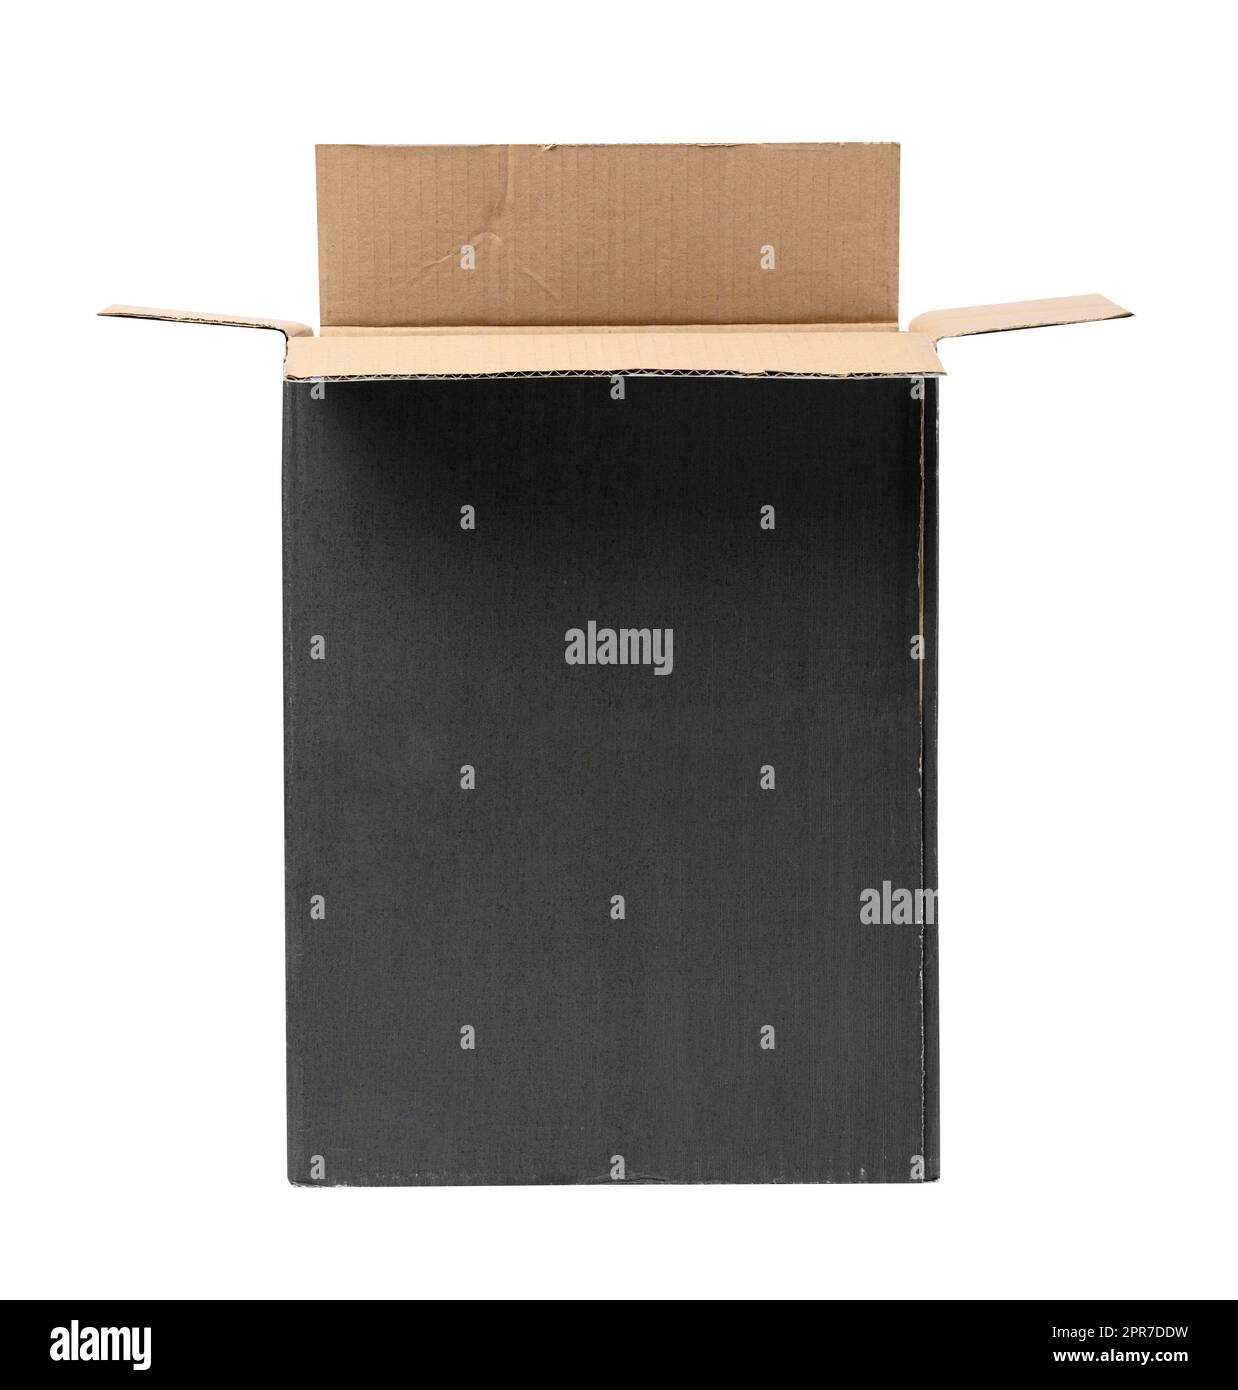 Blank corrugated cardboard box isolated on white background Stock Photo